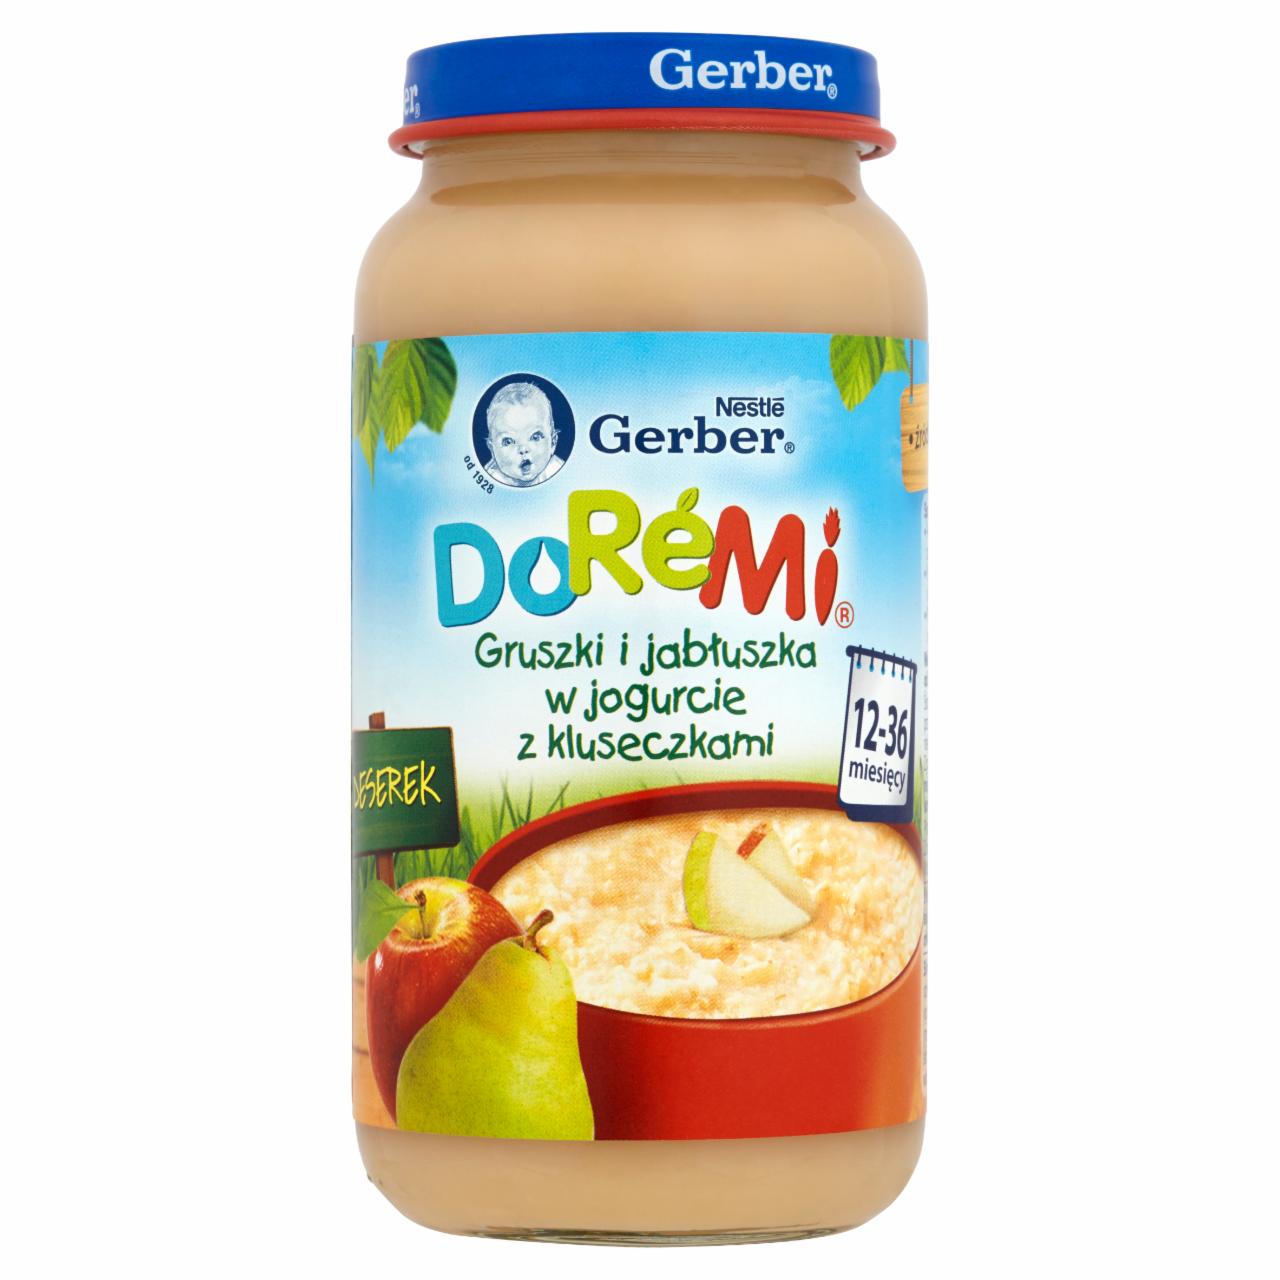 Zdjęcia - Gerber DoReMi Deserek Gruszki i jabłuszka w jogurcie z kluseczkami 12-36 miesięcy 250 g